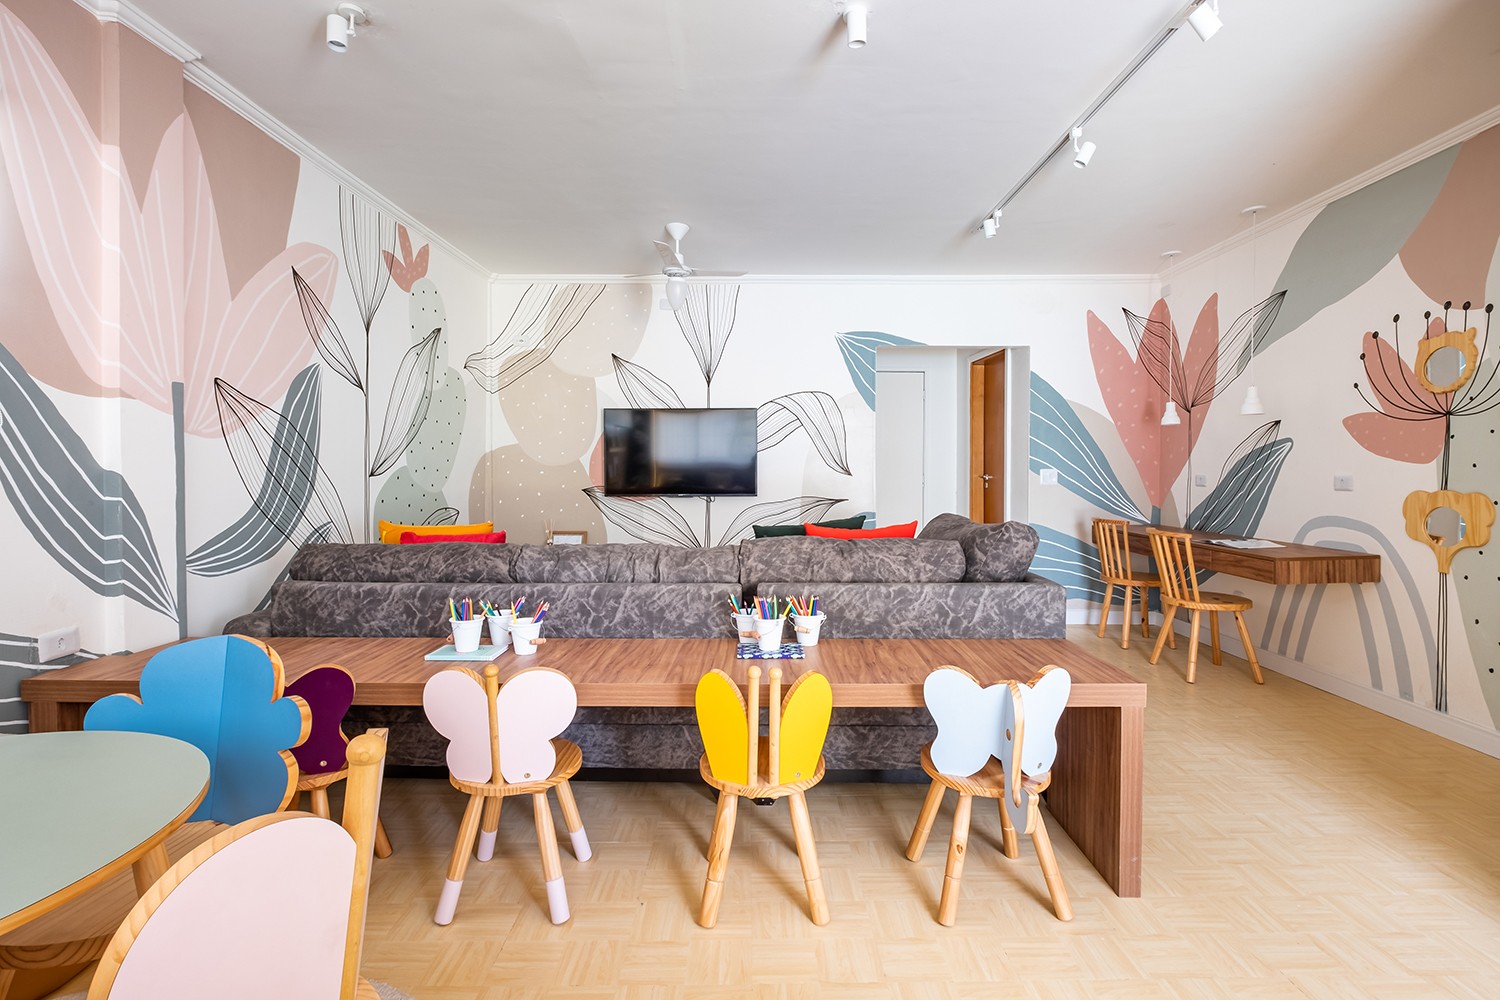 O projeto transformou um espaço insalubre em um ambiente lúdico, colorido, com iluminação e identidade (Foto: Nathalie Artaxo / Divulgação)